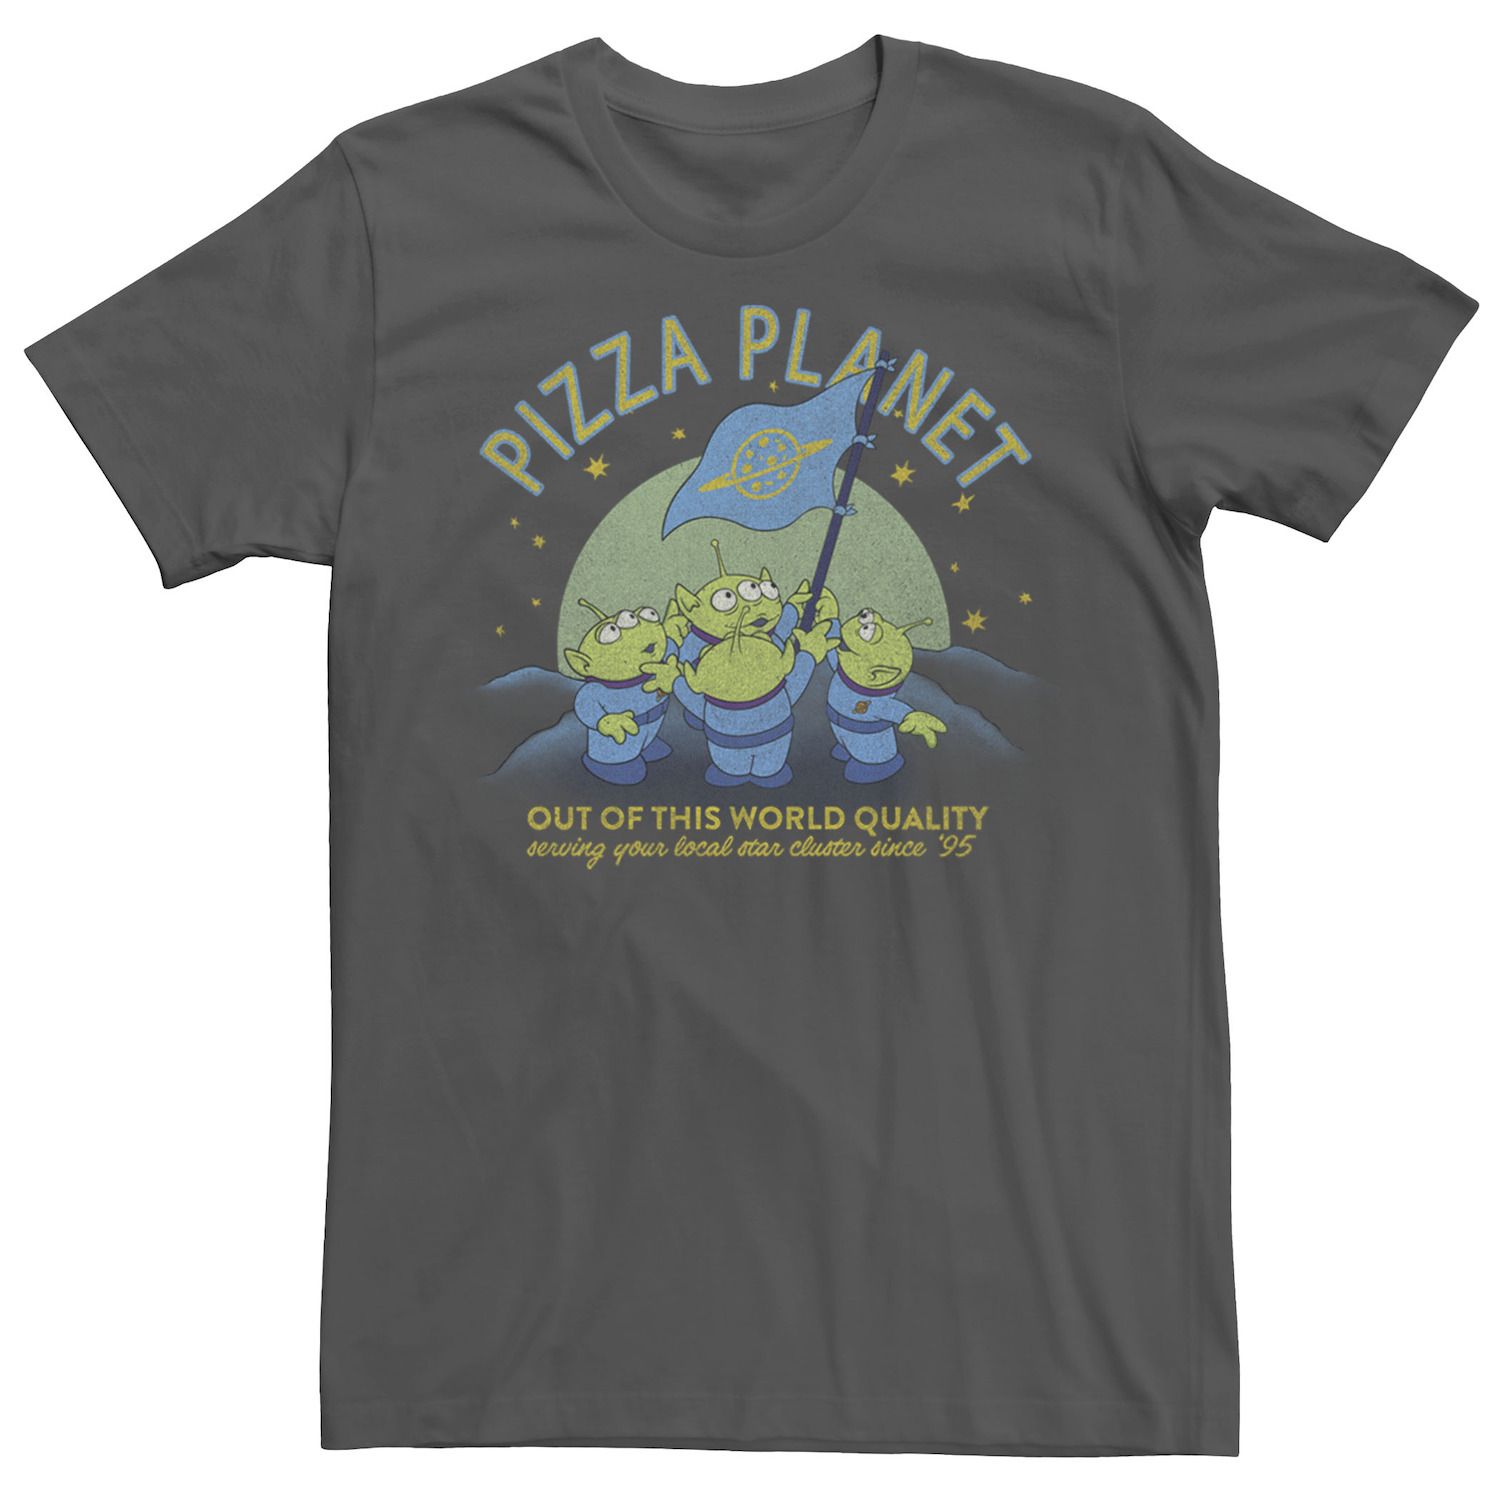 Мужская футболка с флагом «История игрушек Пицца Планета игрушек» Disney / Pixar мужская футболка планета пицца s белый